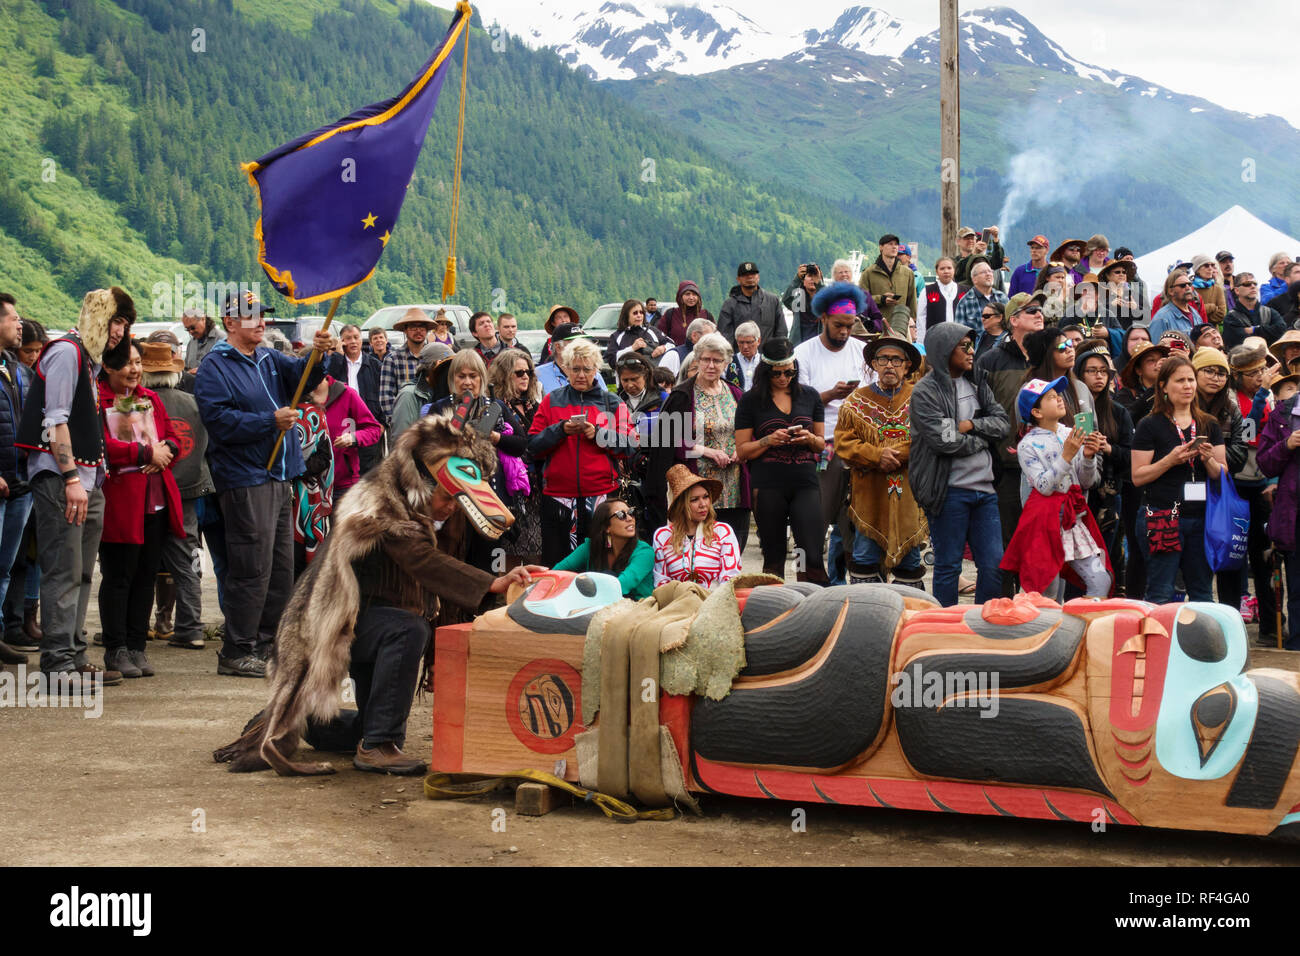 Una folla di gente dal Tlingit, Tsimshian e Haida tribù si sono riuniti per un Native American Indian totem pole sollevamento celebrazione, Juneau, in Alaska Foto Stock